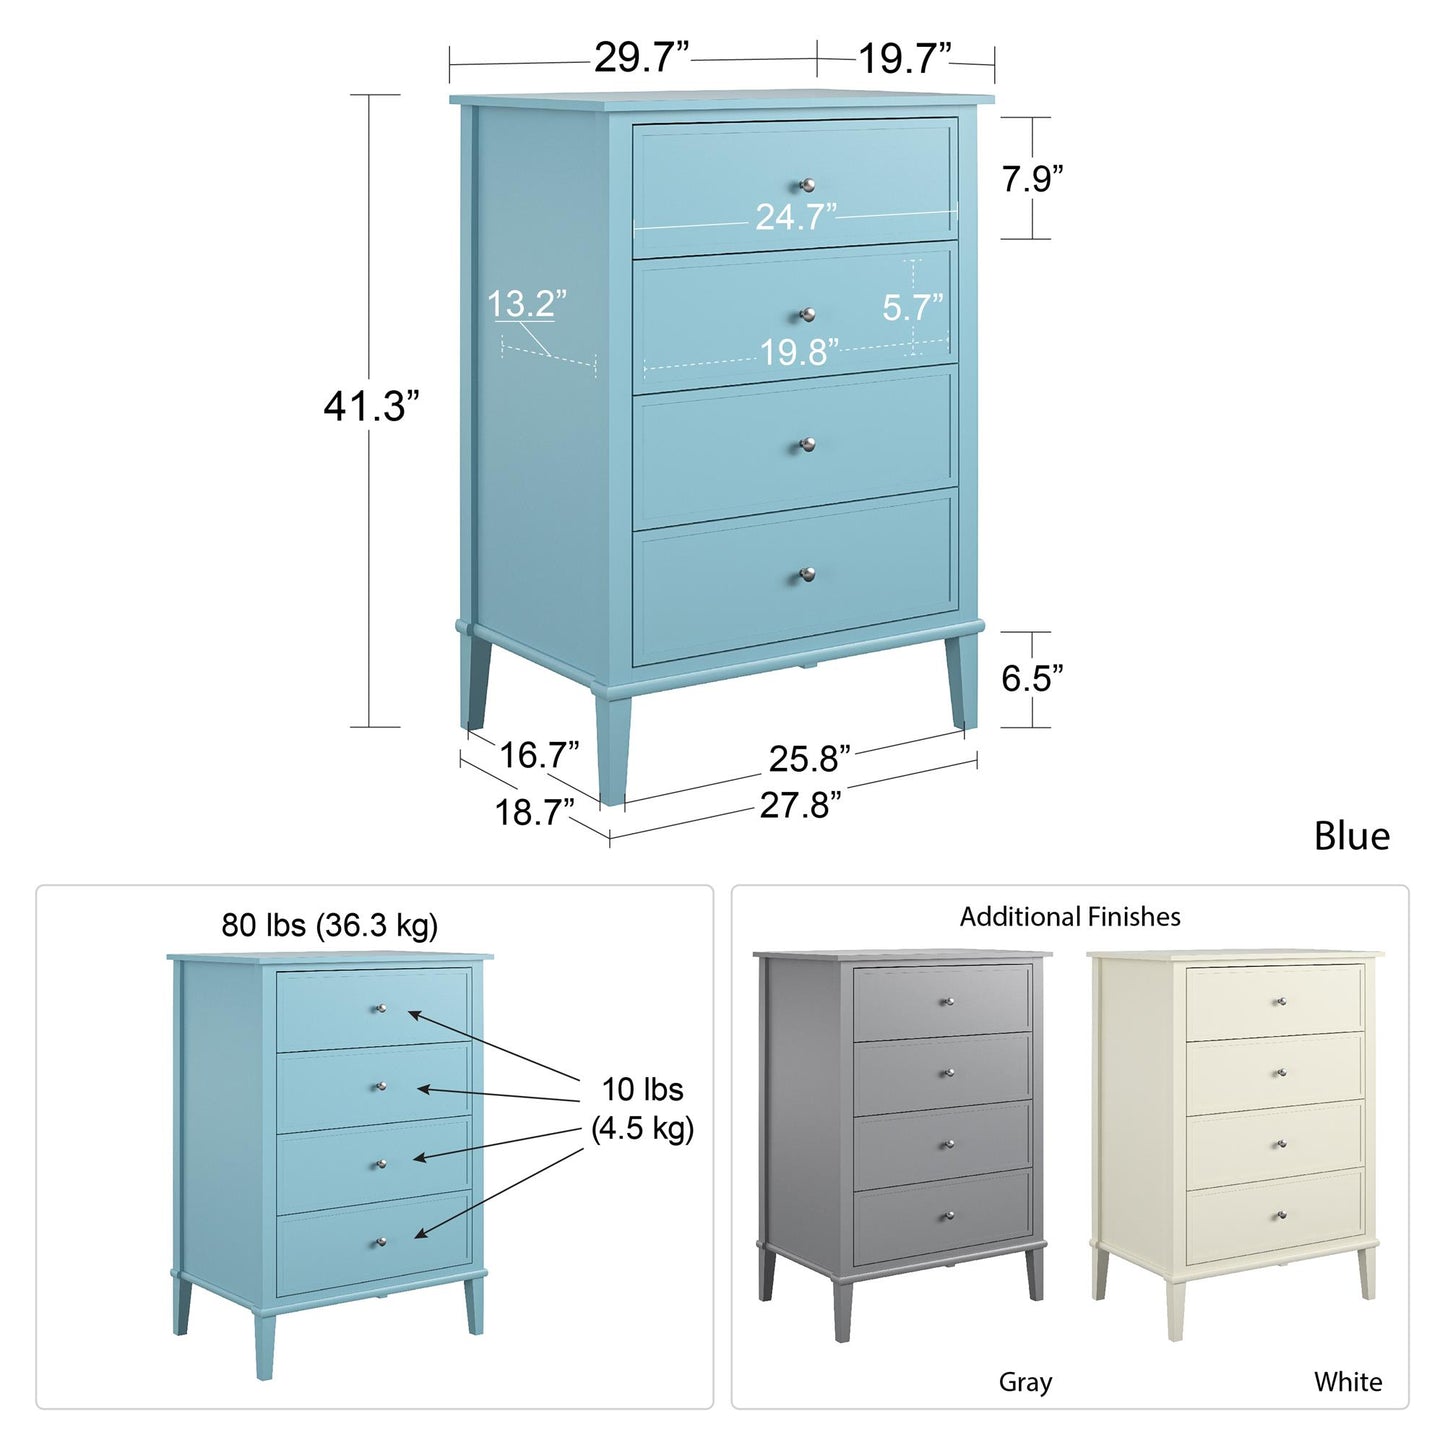 Franklin 4 Drawer Dresser with Durable Metal Slides - Blue